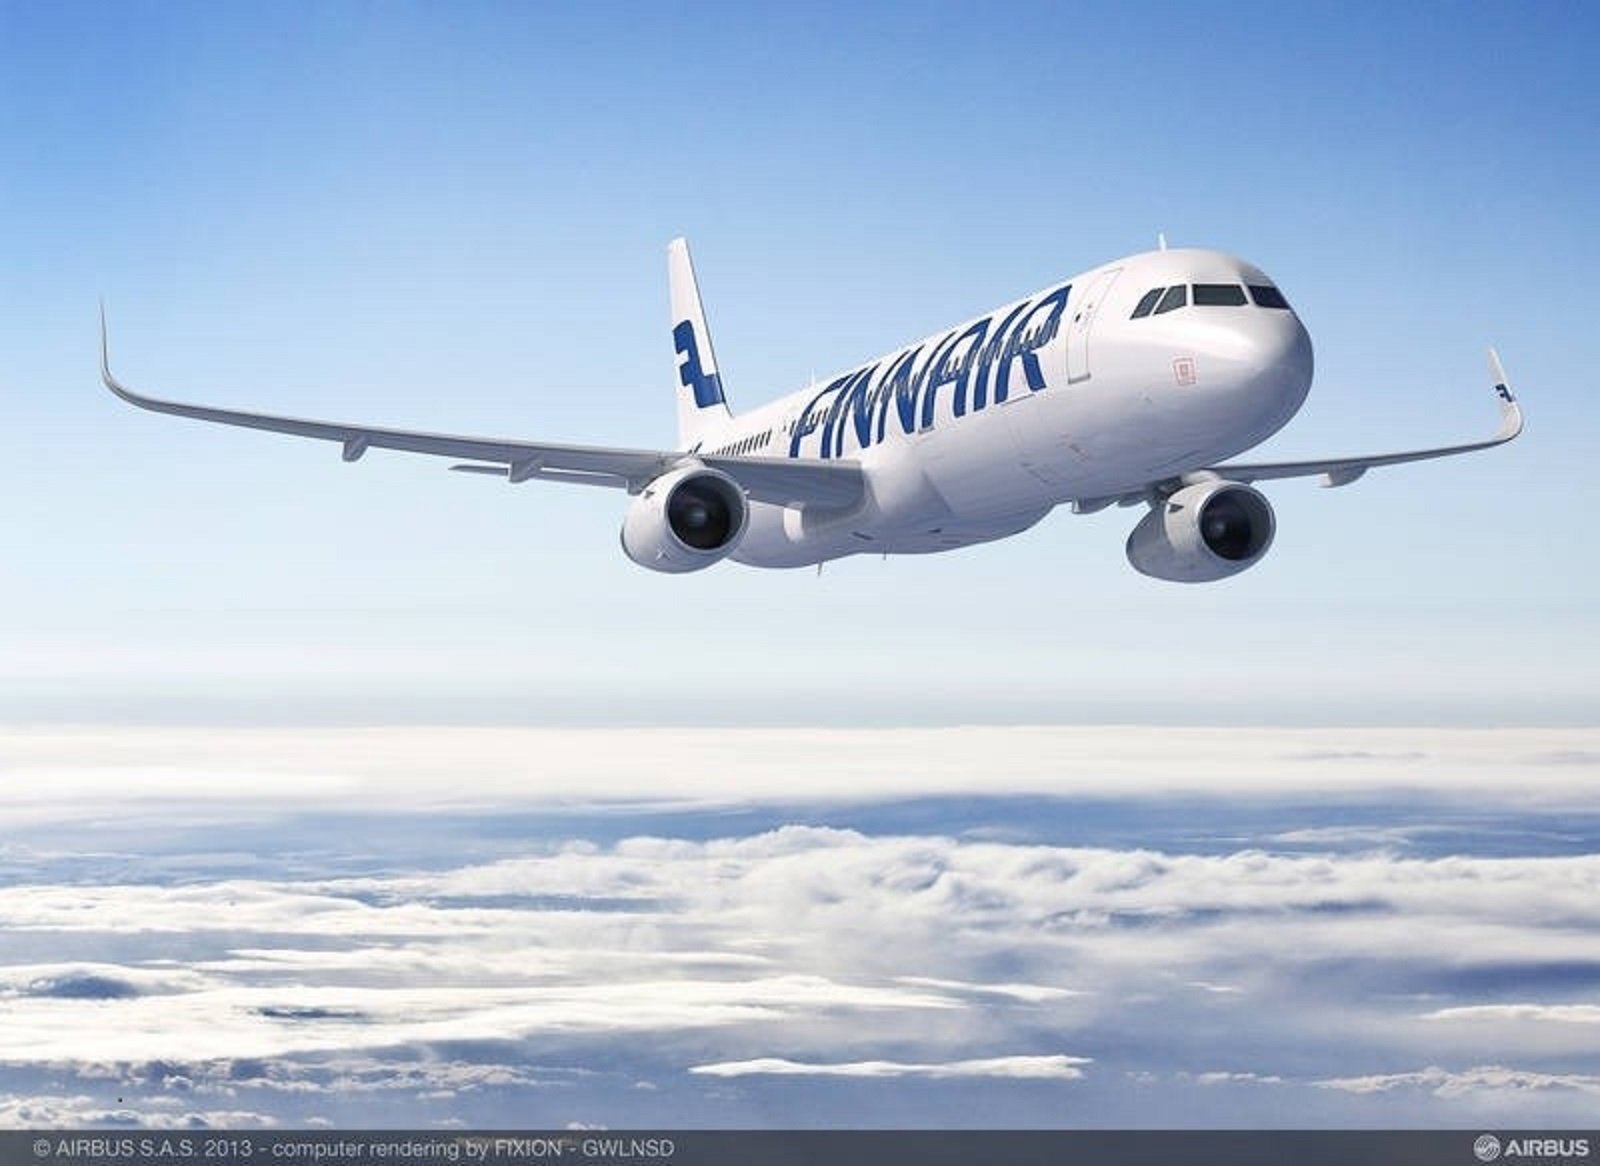 Convocats sis dies de vaga a la base de Finnair a l'aeroport del Prat